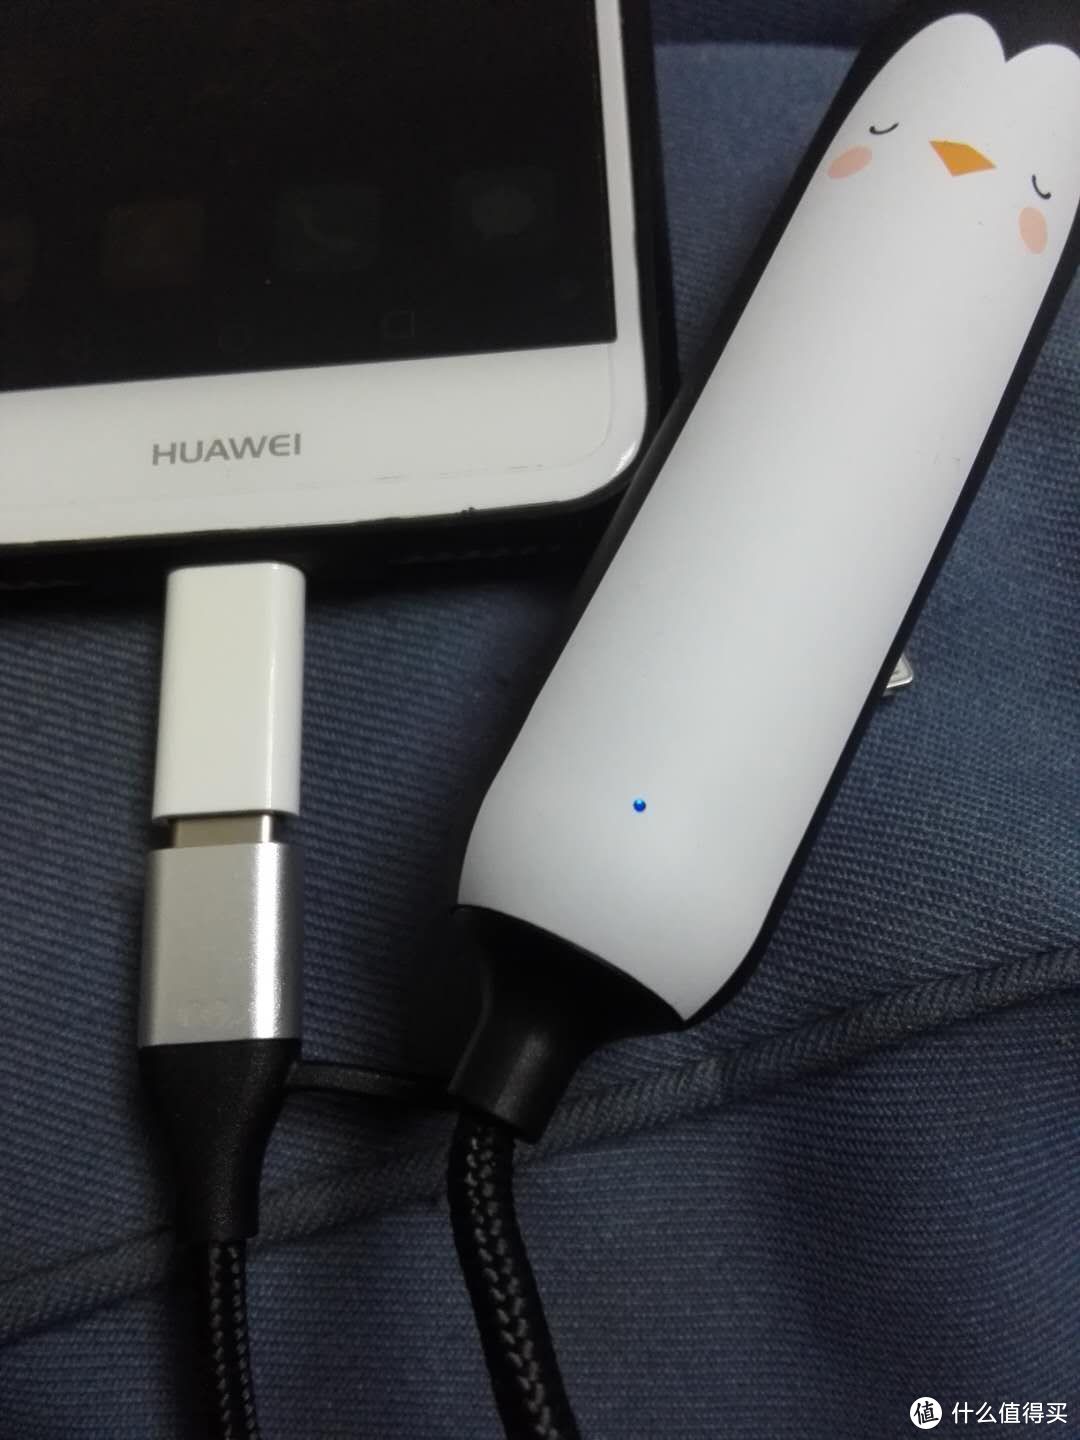 iWALK带充电宝功能、三合一电源线开箱以及使用评测